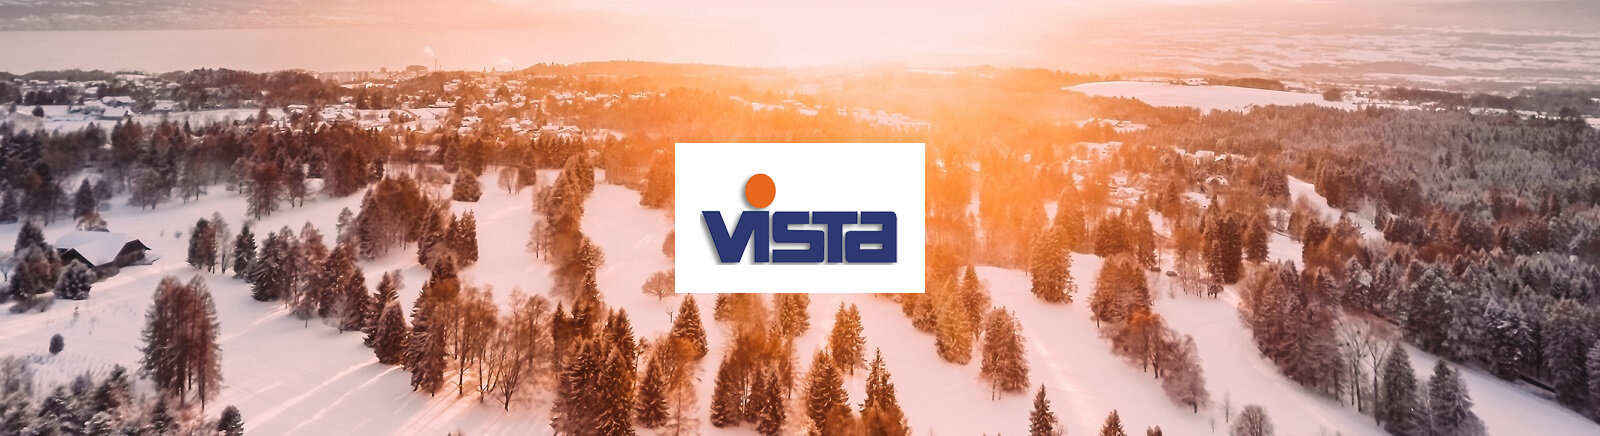 Vista Markenschuhe online kaufen im Shop von GISY